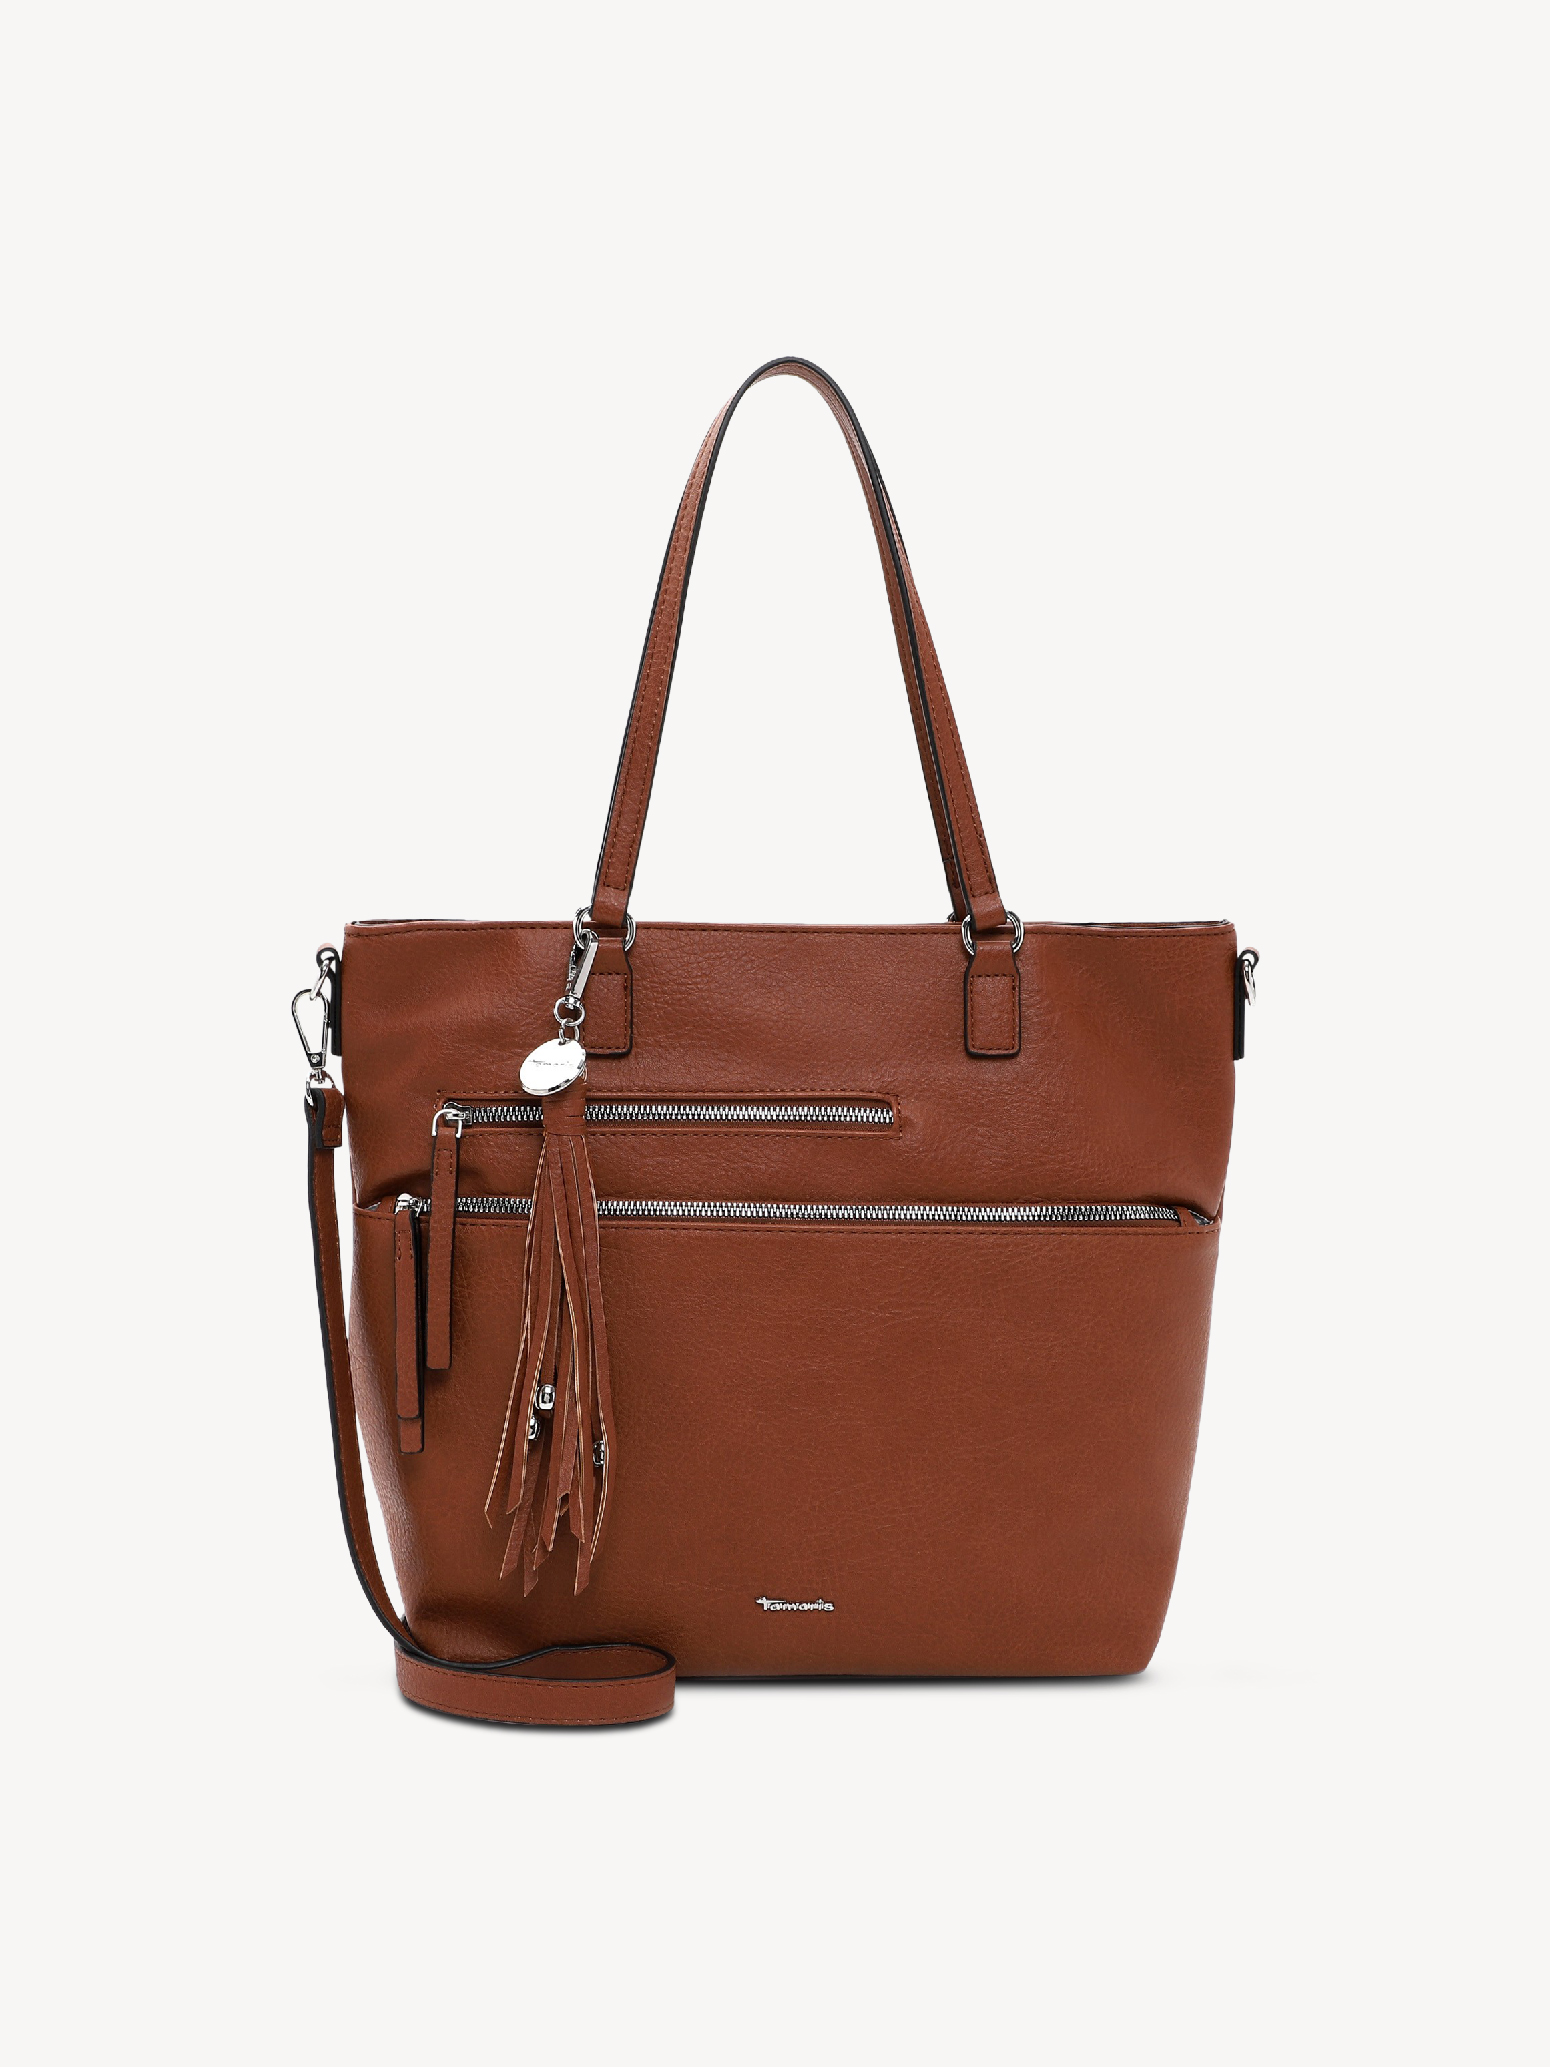 Shopping bag - brown